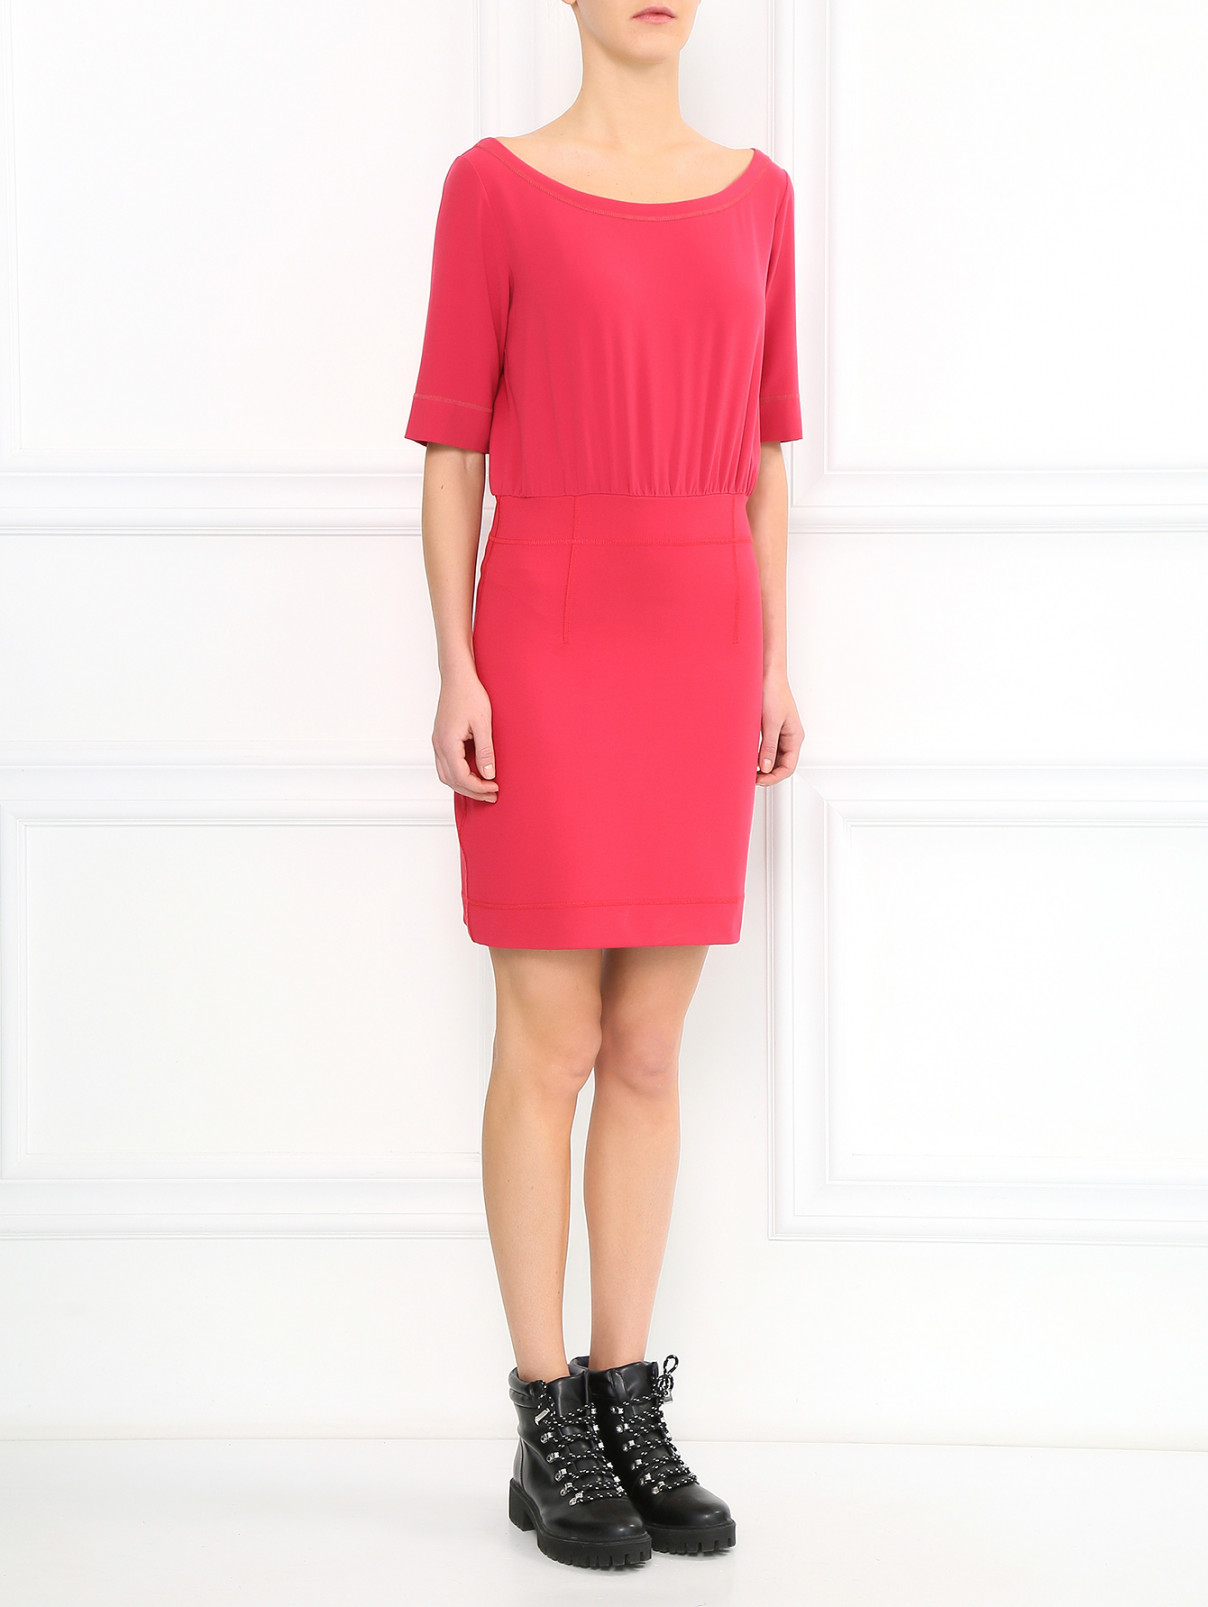 Платье-мини с круглым вырезом Moschino Cheap&Chic  –  Модель Общий вид  – Цвет:  Розовый